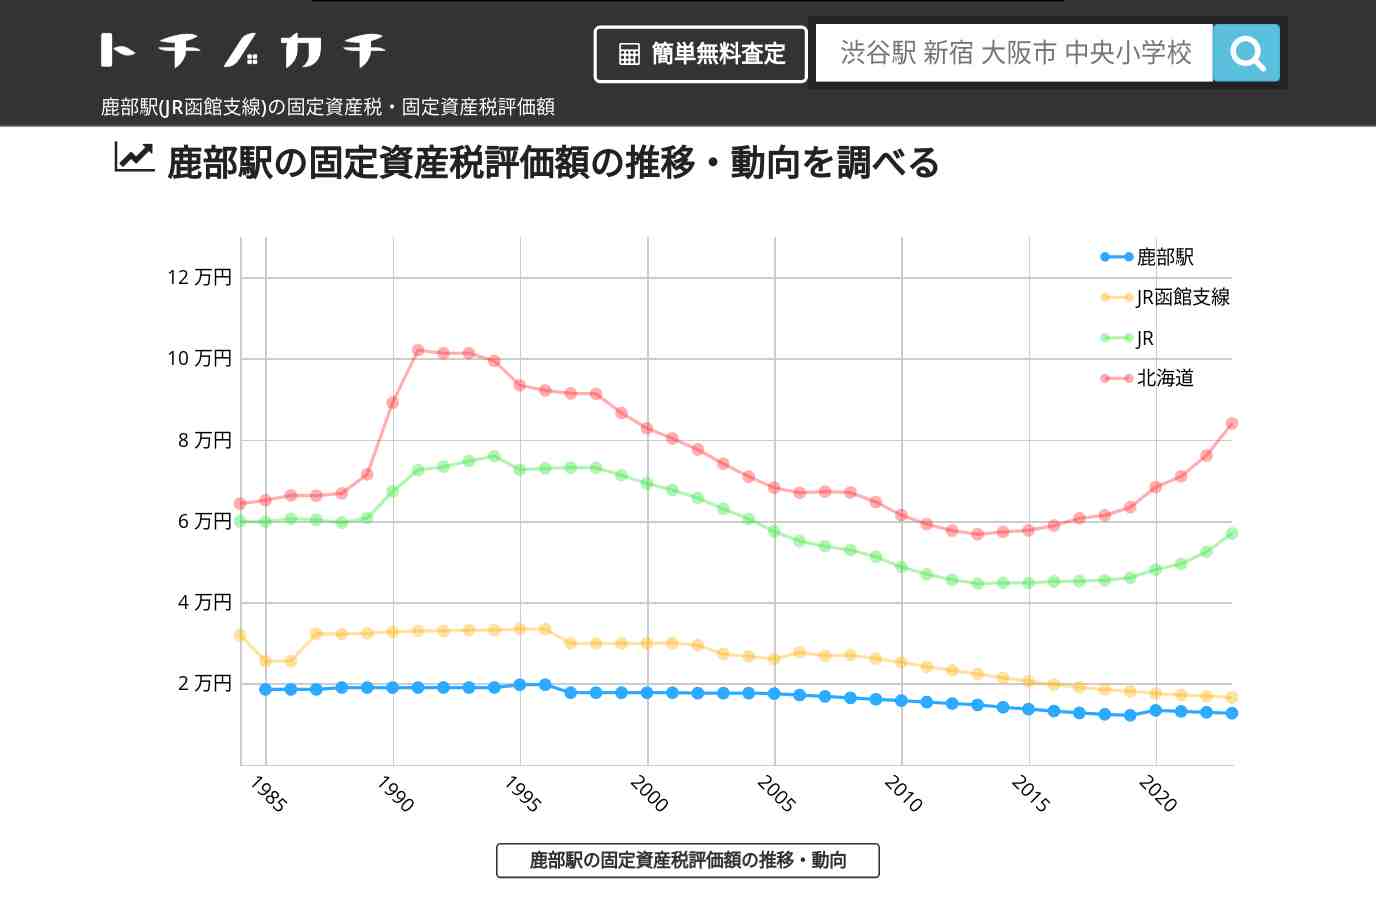 鹿部駅(JR函館支線)の固定資産税・固定資産税評価額 | トチノカチ